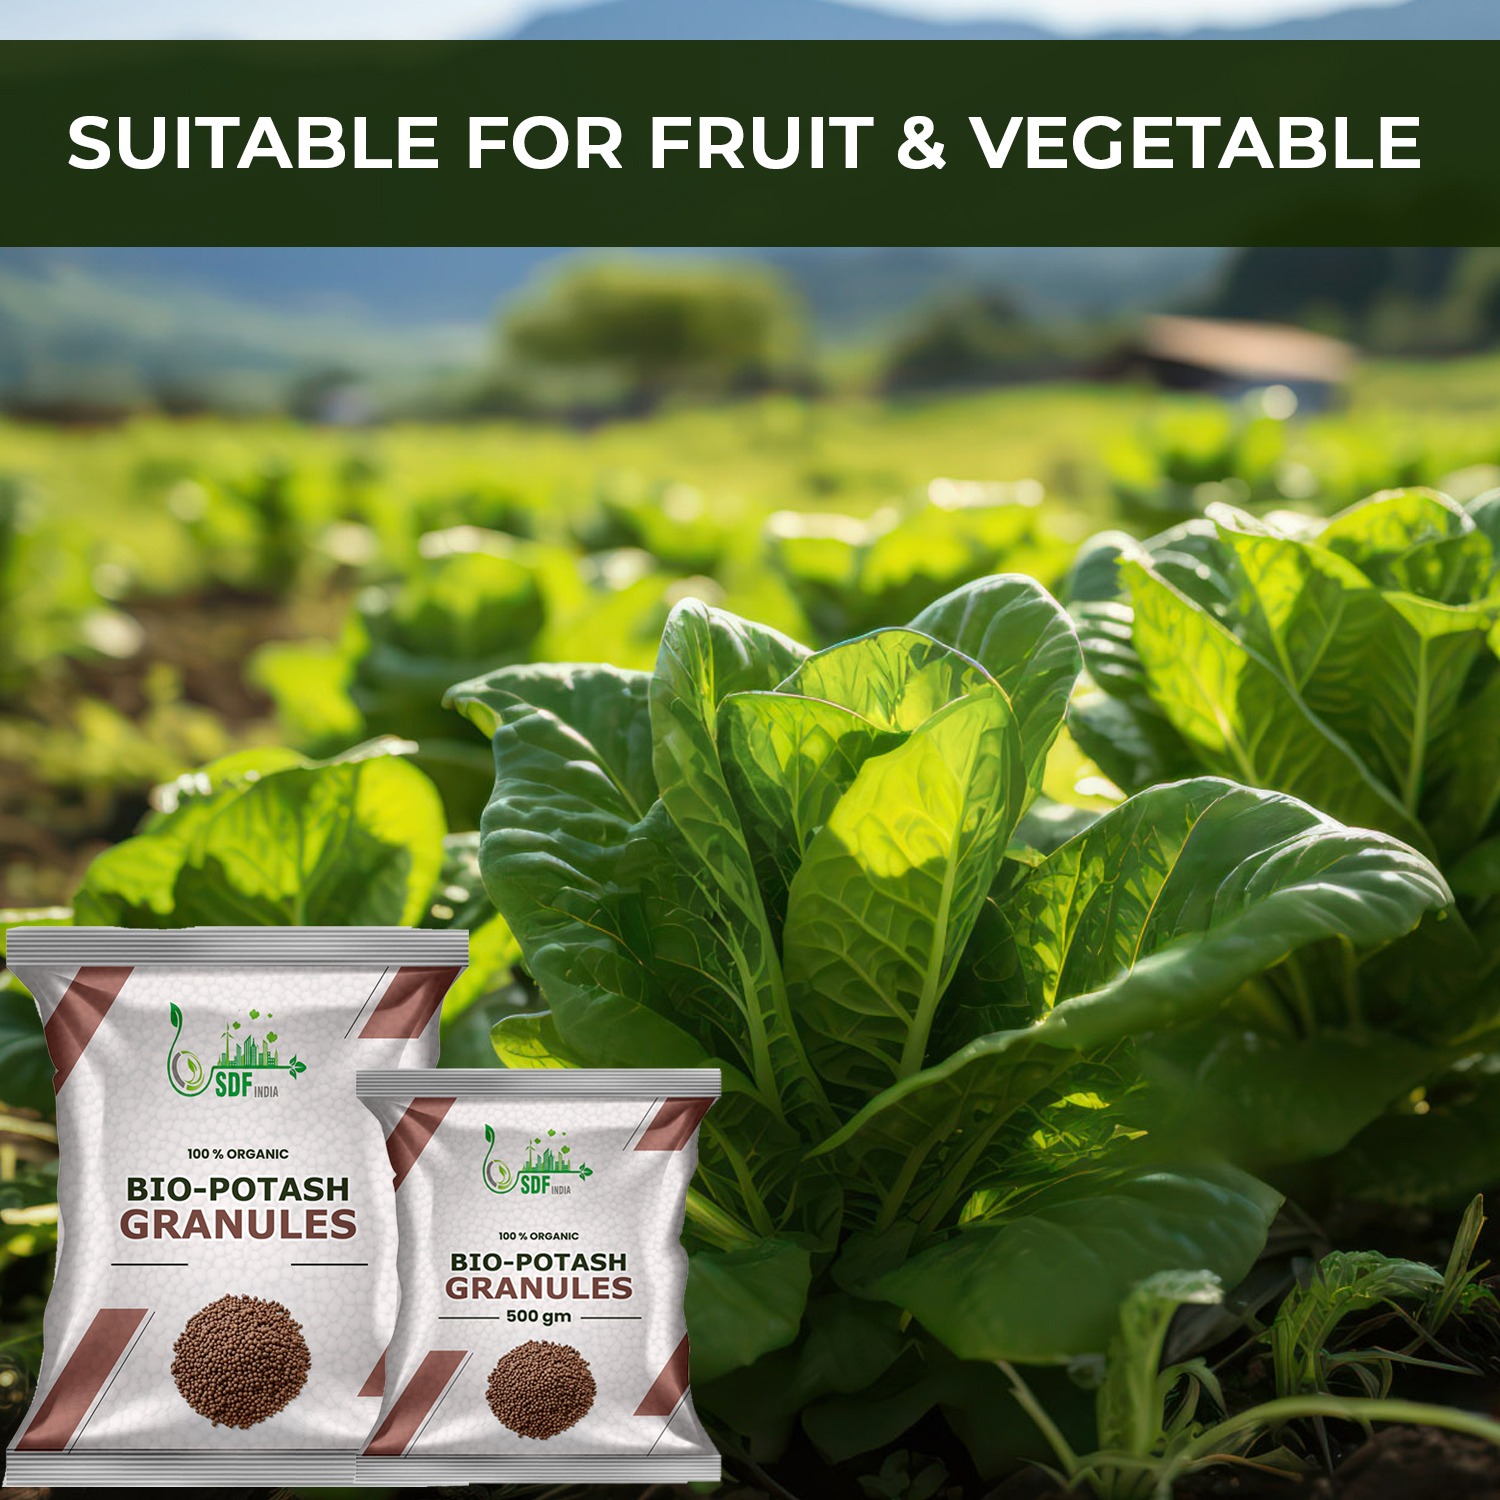 Bio Organic Potash | Essential Fertilizer for Gardening - 1 Kg | Granular Potash Fertiliser for Vegetables, Fruits, Garden Flowers, Agriculture Crops, Indoor & Outdoor Home Plants